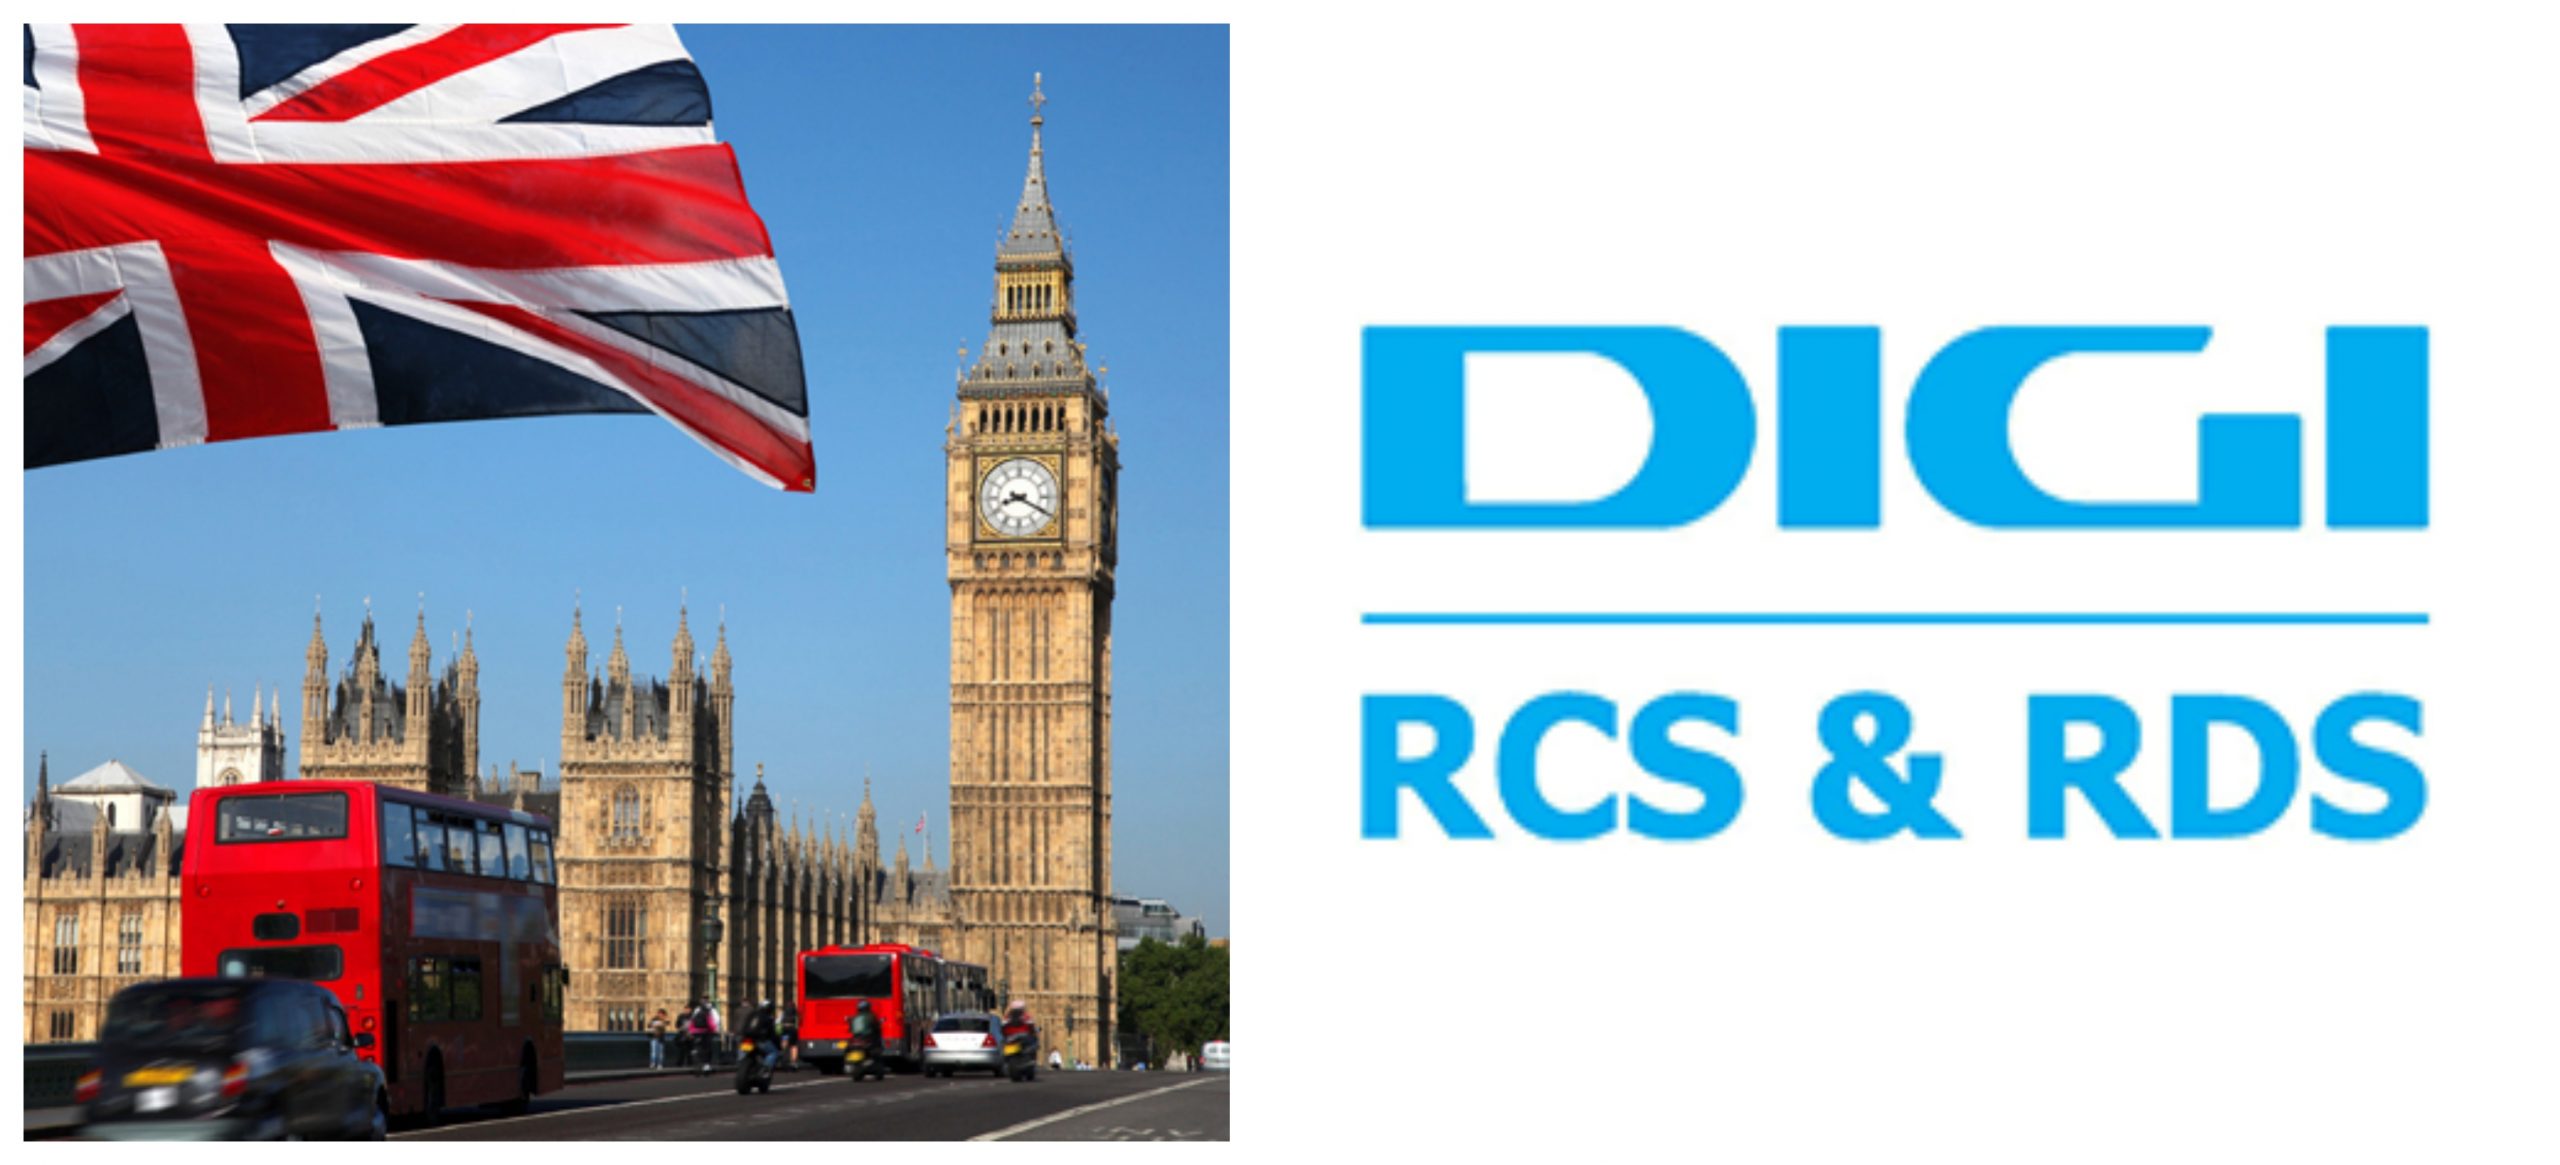 Anunț important pentru clienții RCS-RDS! Tariful se schimbă considerabil